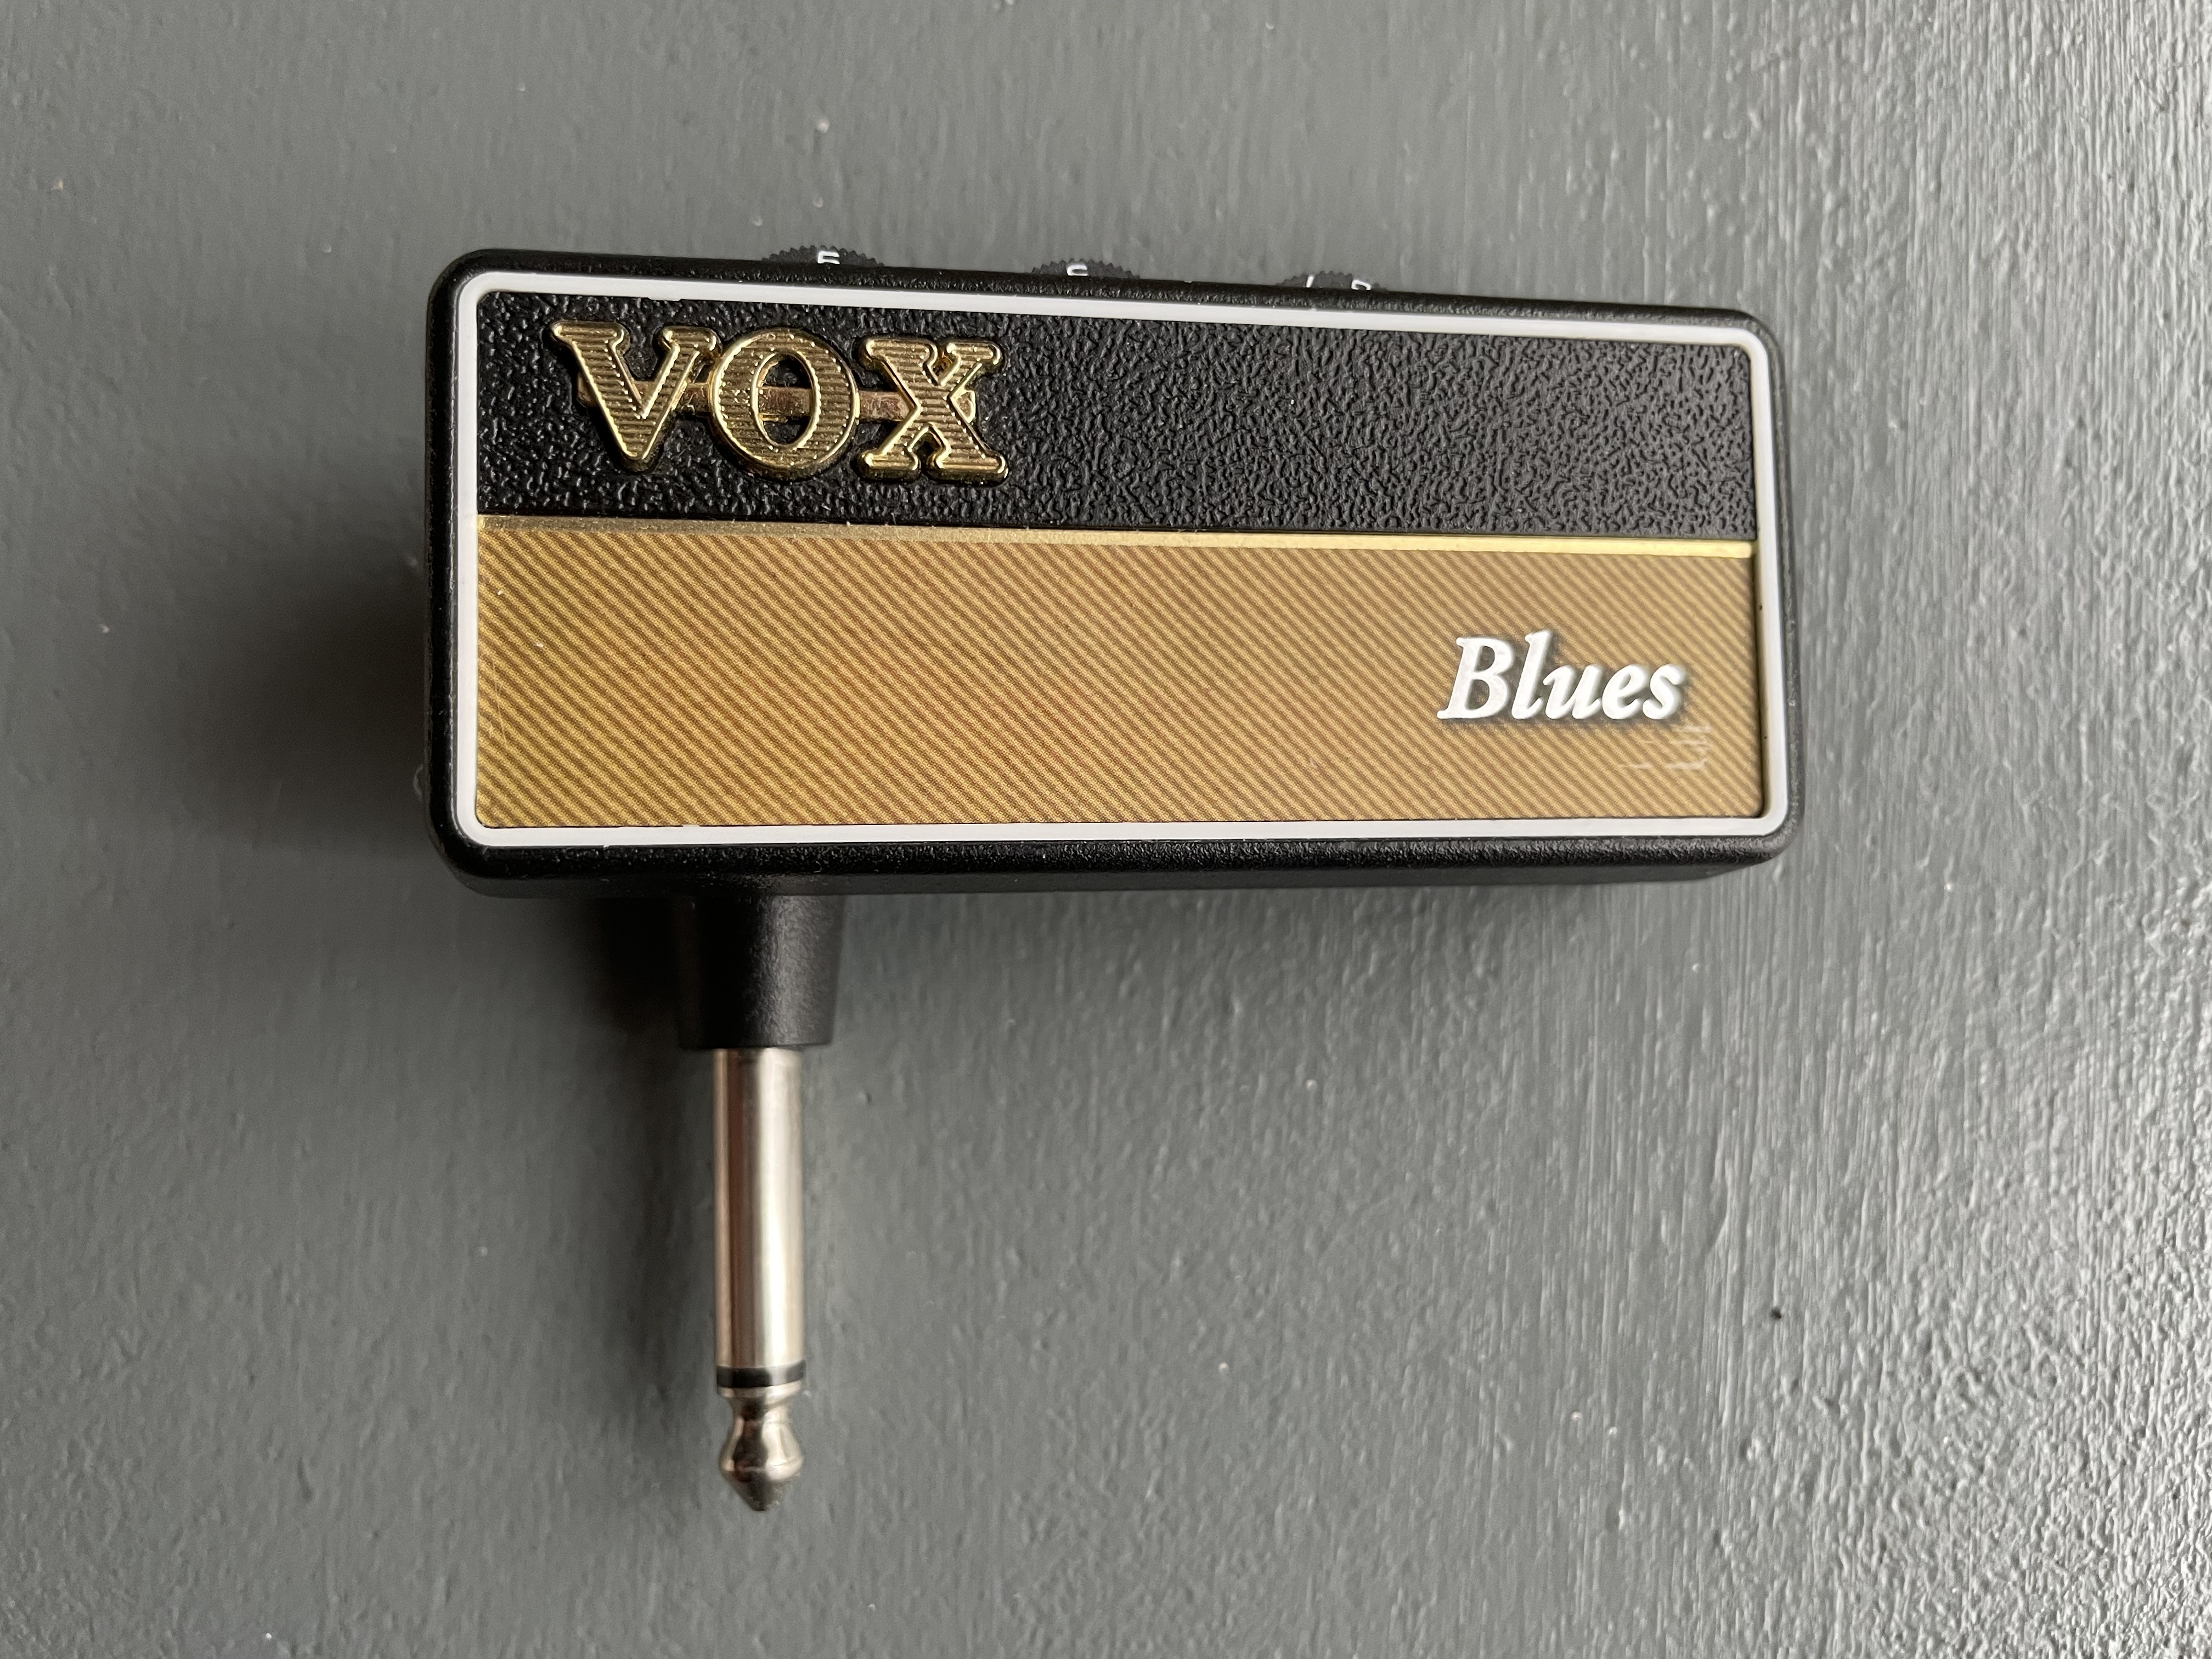 Vox AmPlug 2 Blues avis : notre test et avis de clients